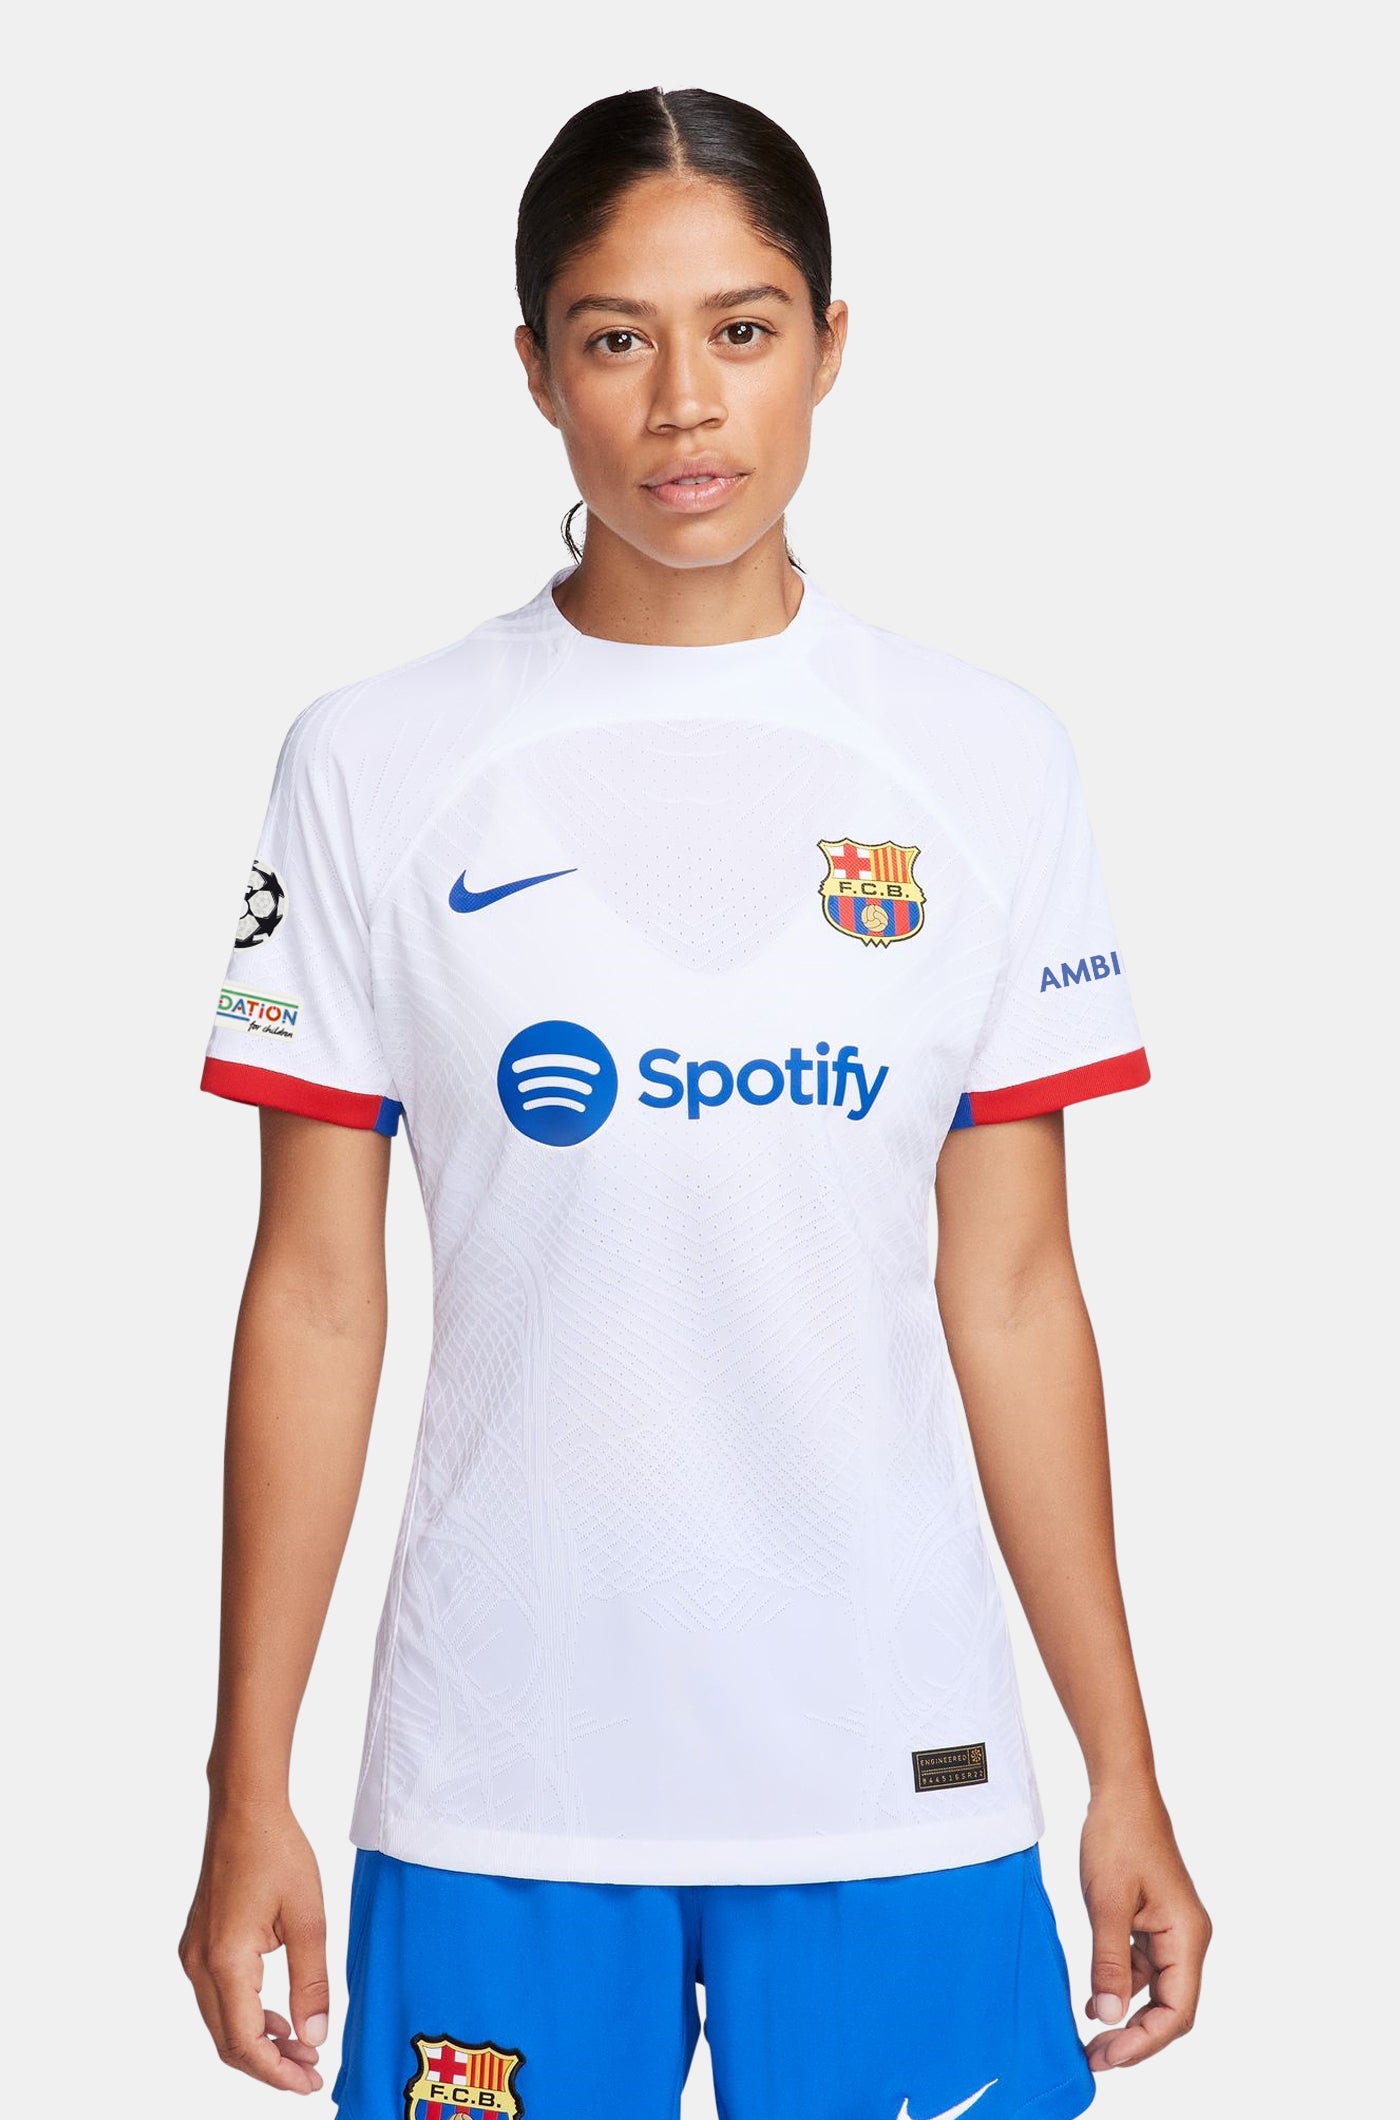 UCL FC Barcelona Away Shirt 23/24 Player’s Edition - Women  - FERMÍN